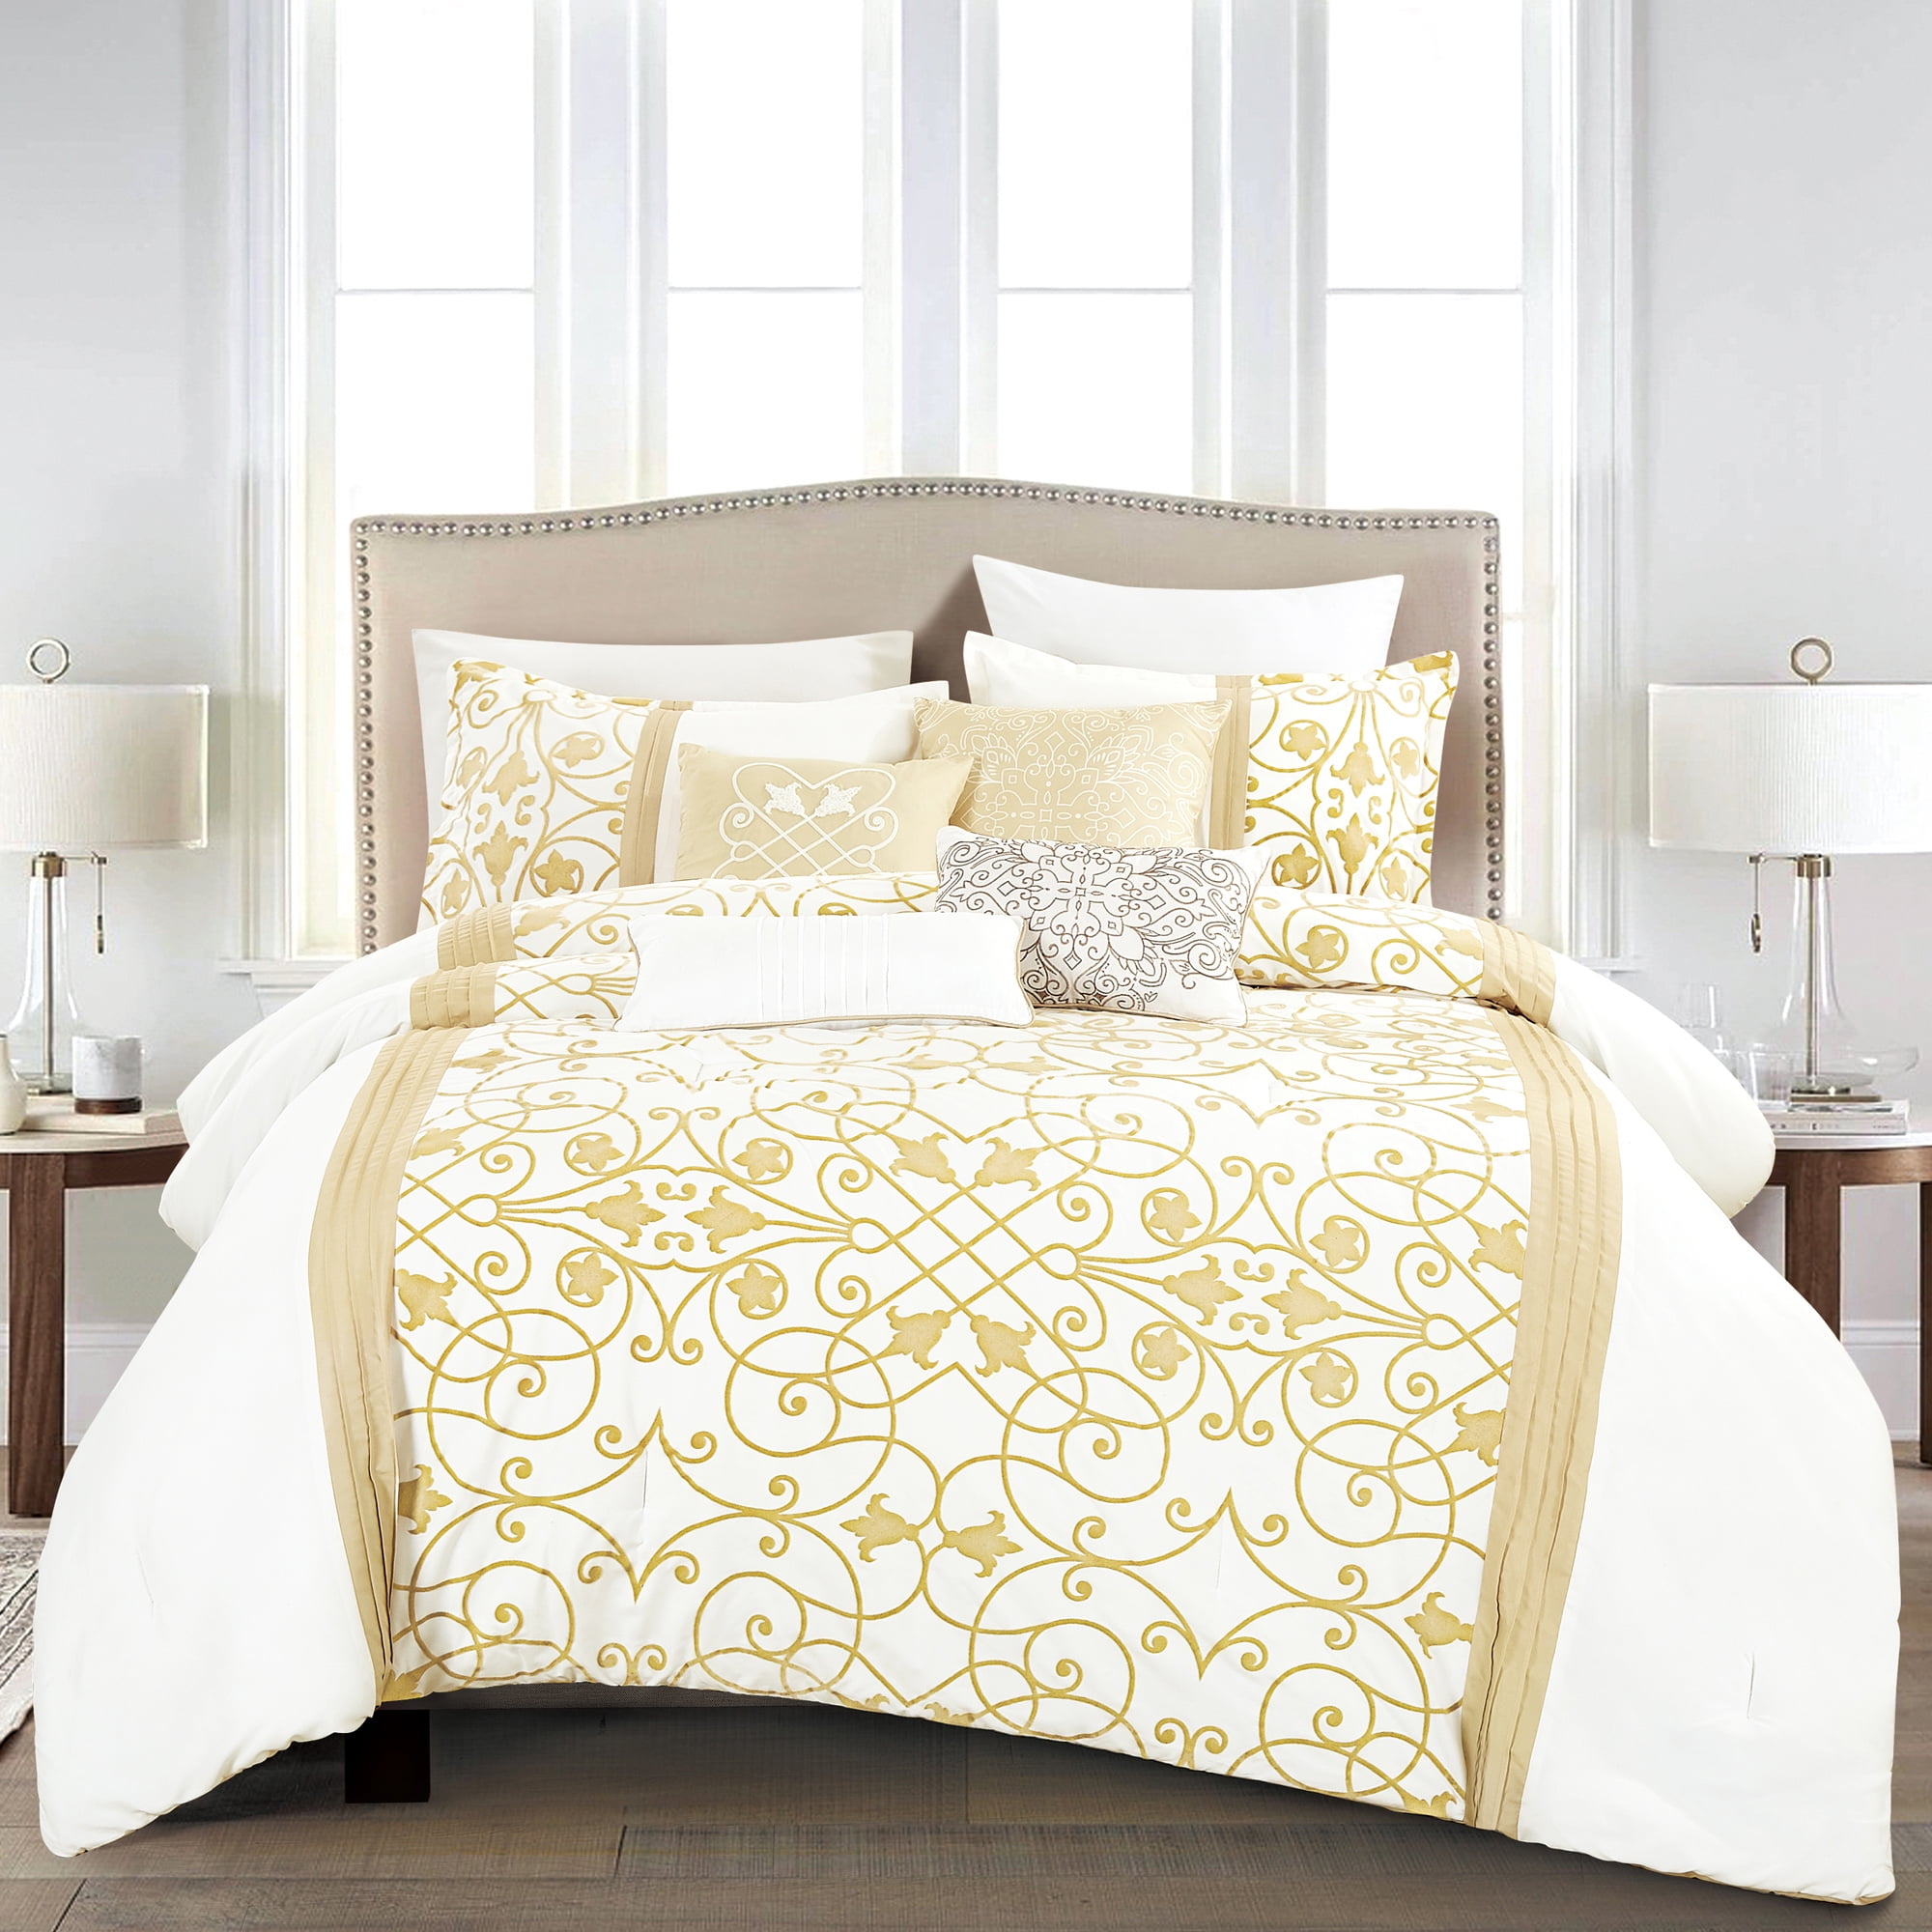 HGMart 7 Piece Bedding Luxury Comforter Set - Queen Size - Yellow ...